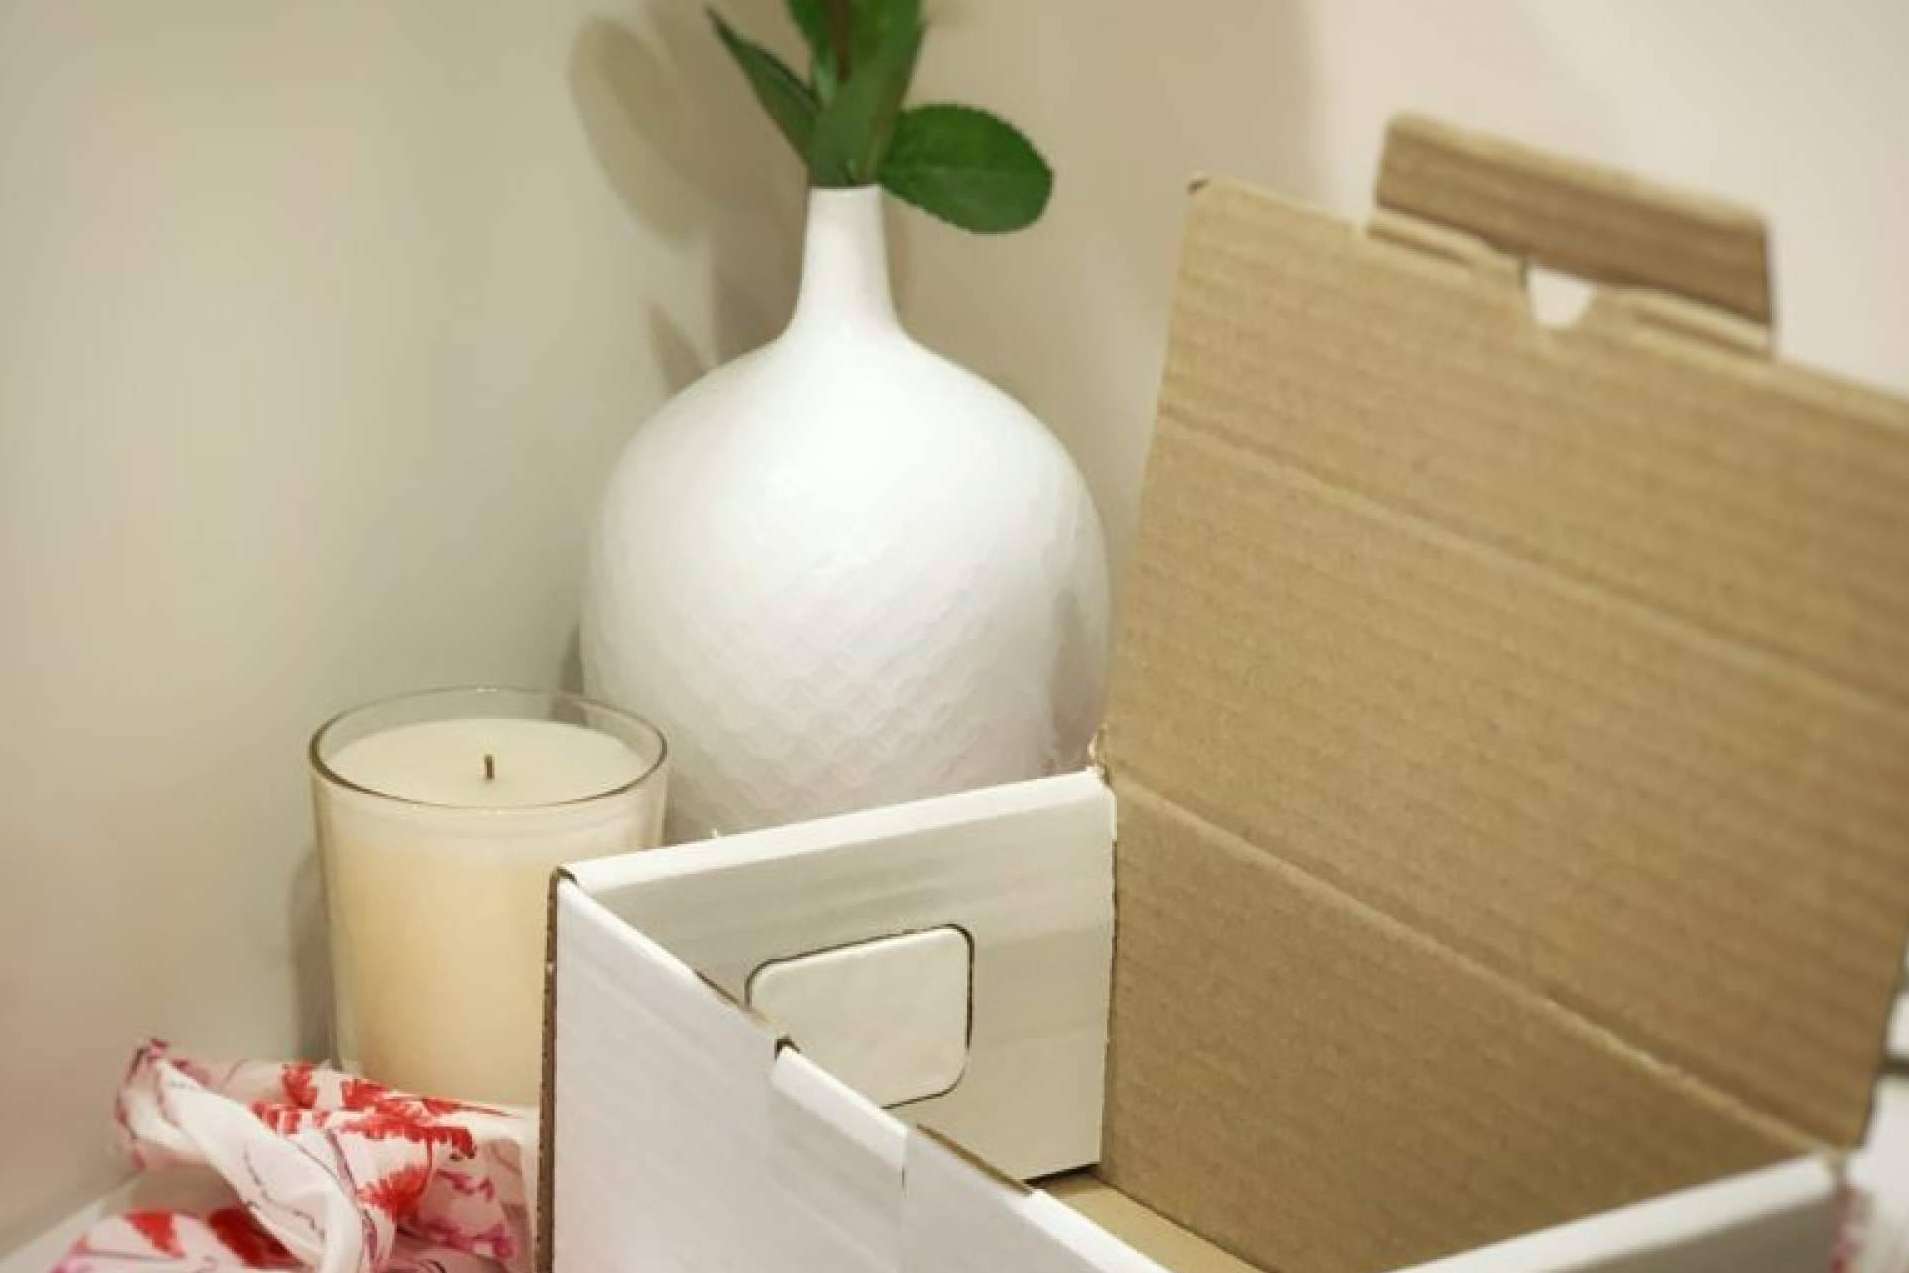 Las empresas pueden crear momentos memorables con un unboxing que incluye aromas perfumados